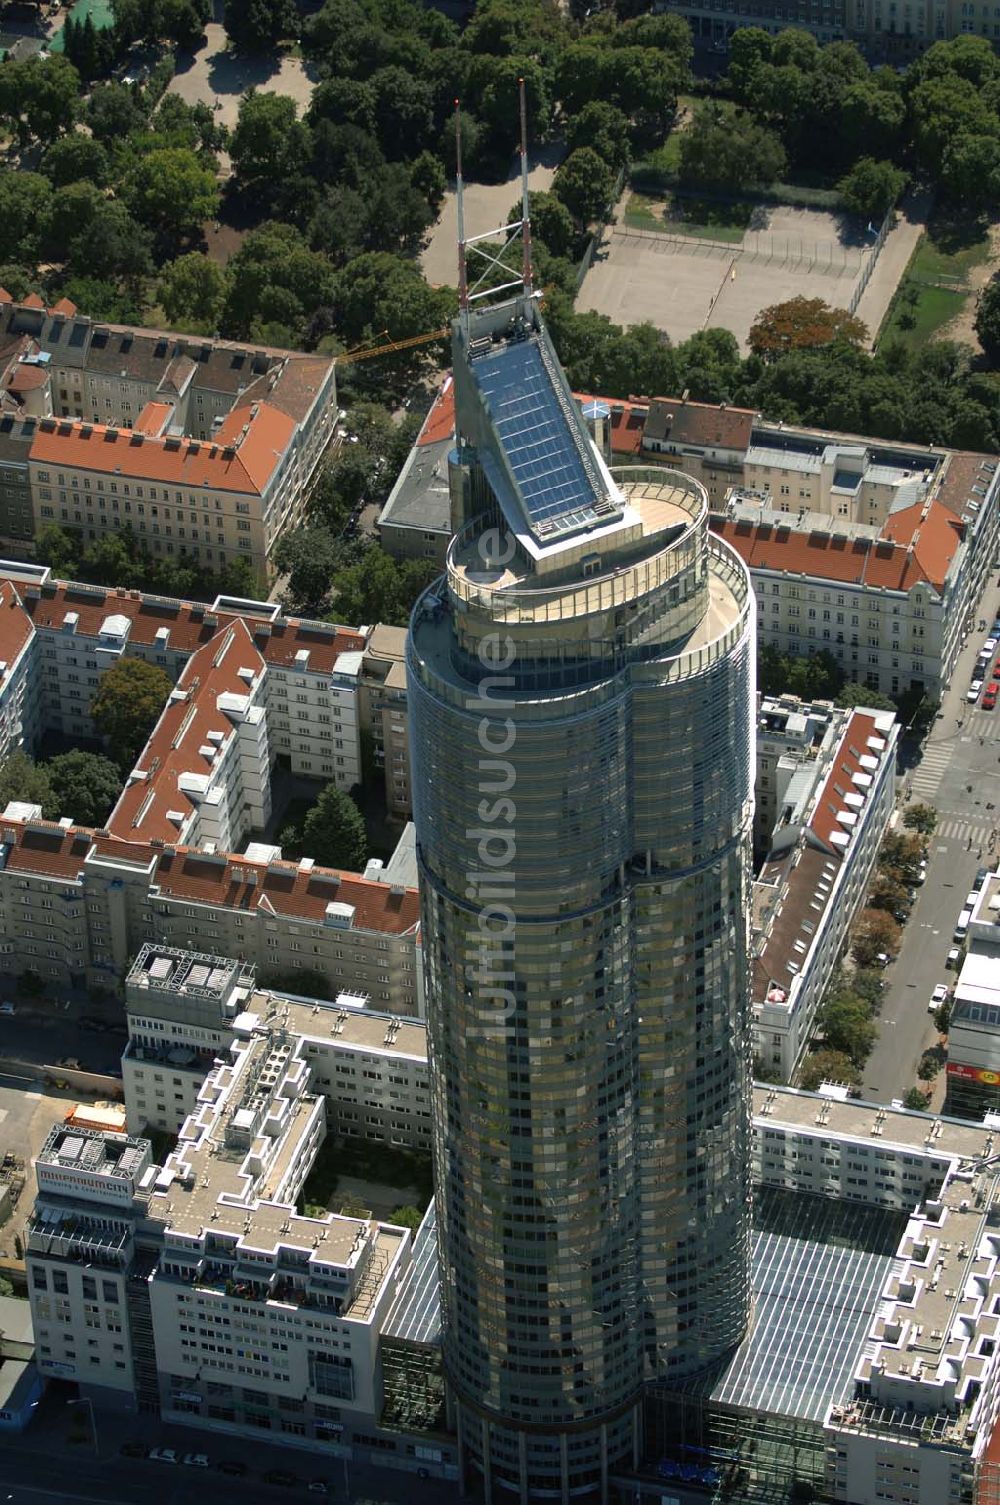 Wien von oben - Millenium Tower in Wien